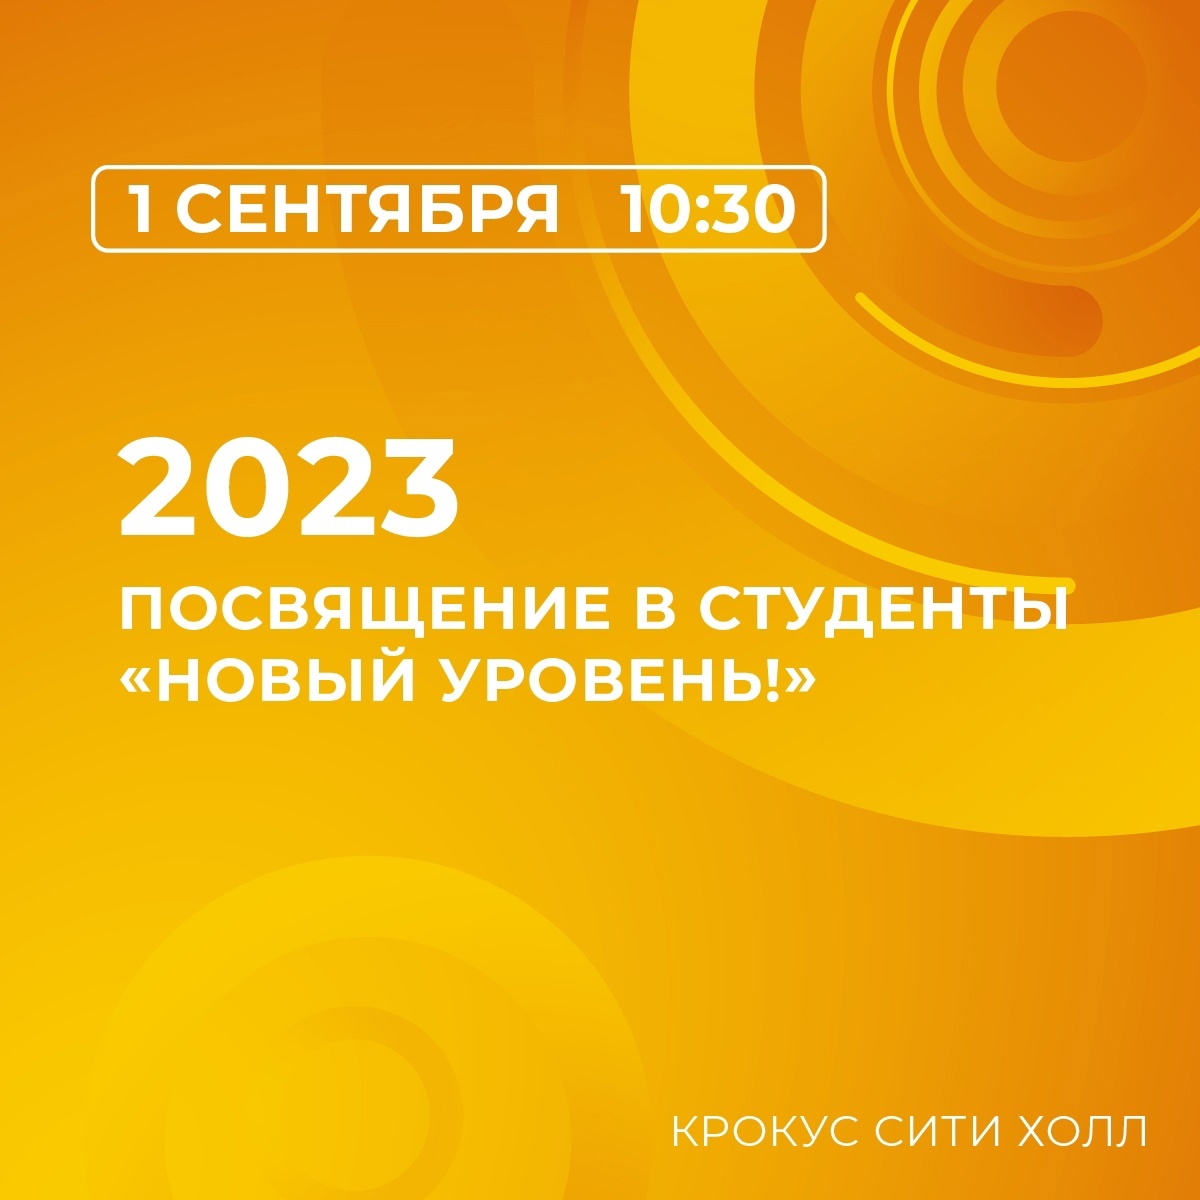 💣ПОСВЯЩЕНИЕ В СТУДЕНТЫ 2023 «НОВЫЙ УРОВЕНЬ!»